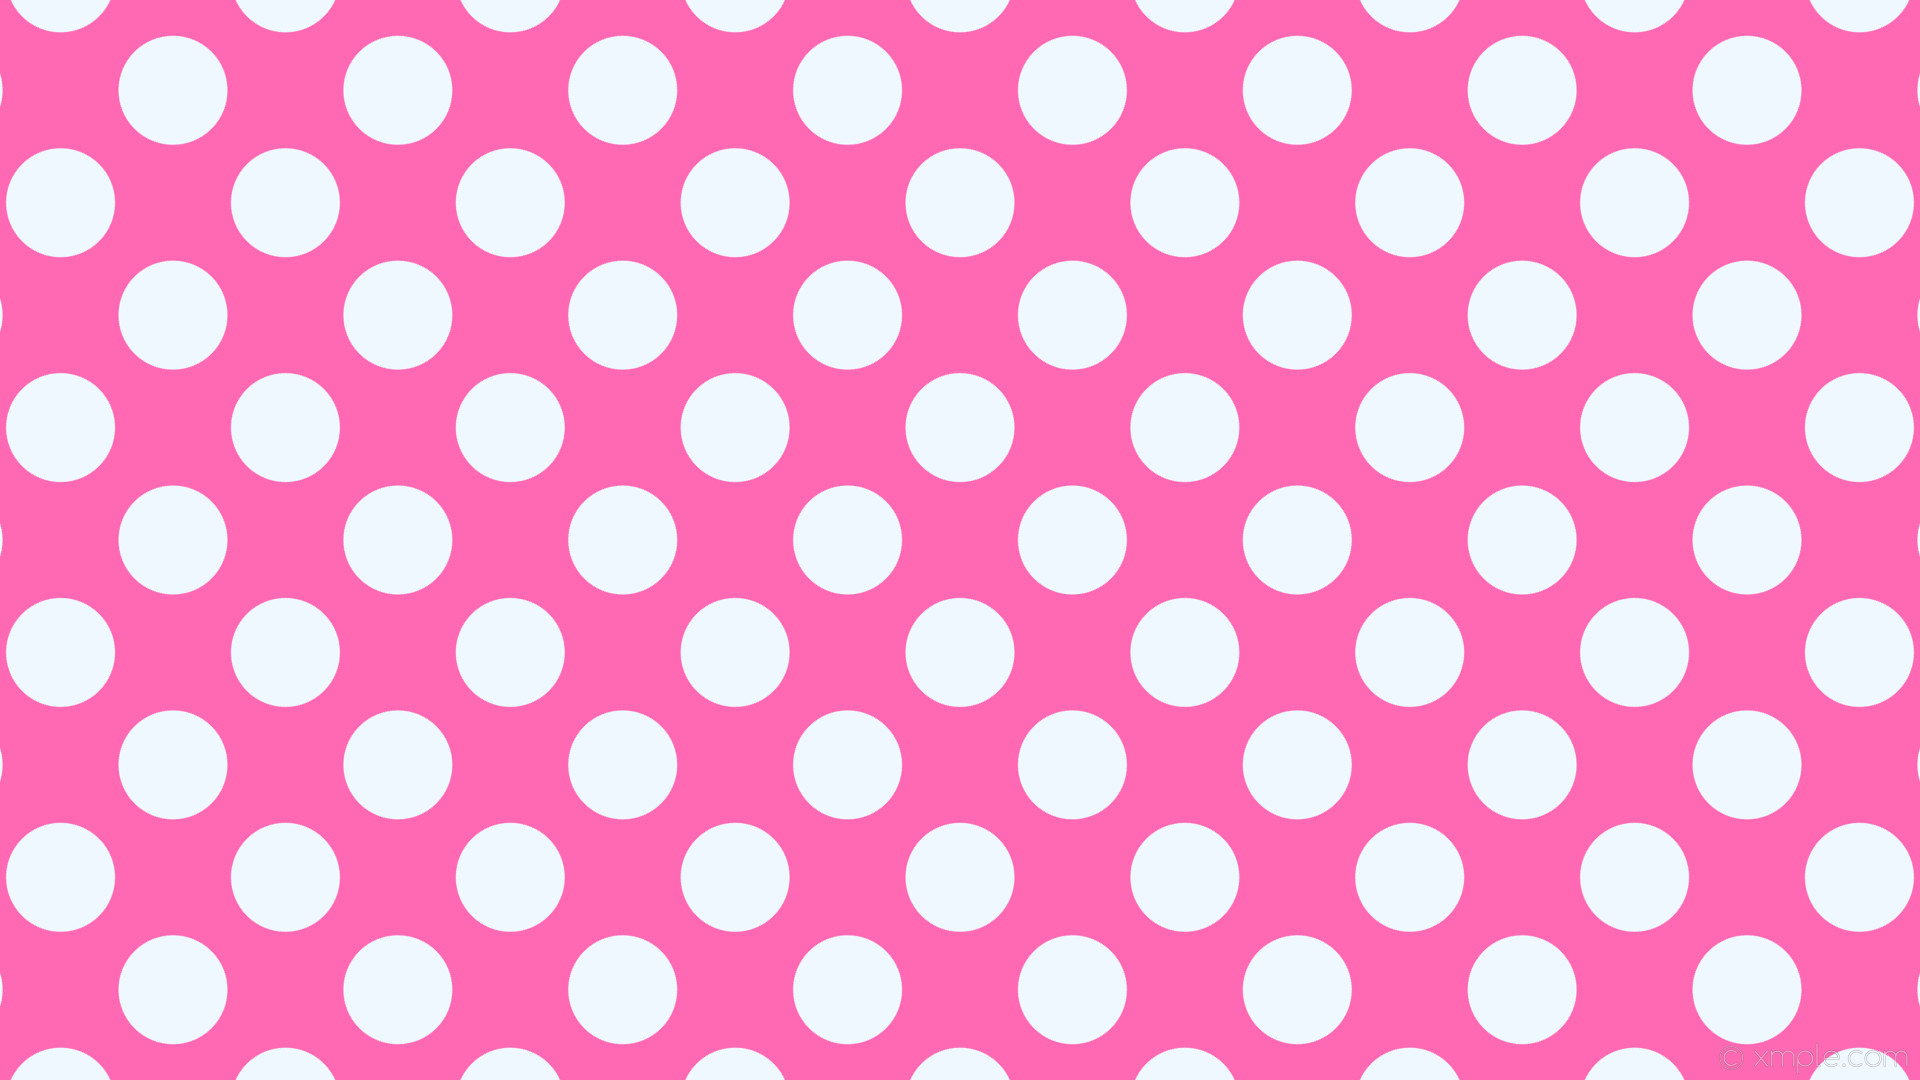 1920x1080 wallpaper polka dots spots pink white hot pink alice blue #ff69b4 #f0f8ff  225Â°